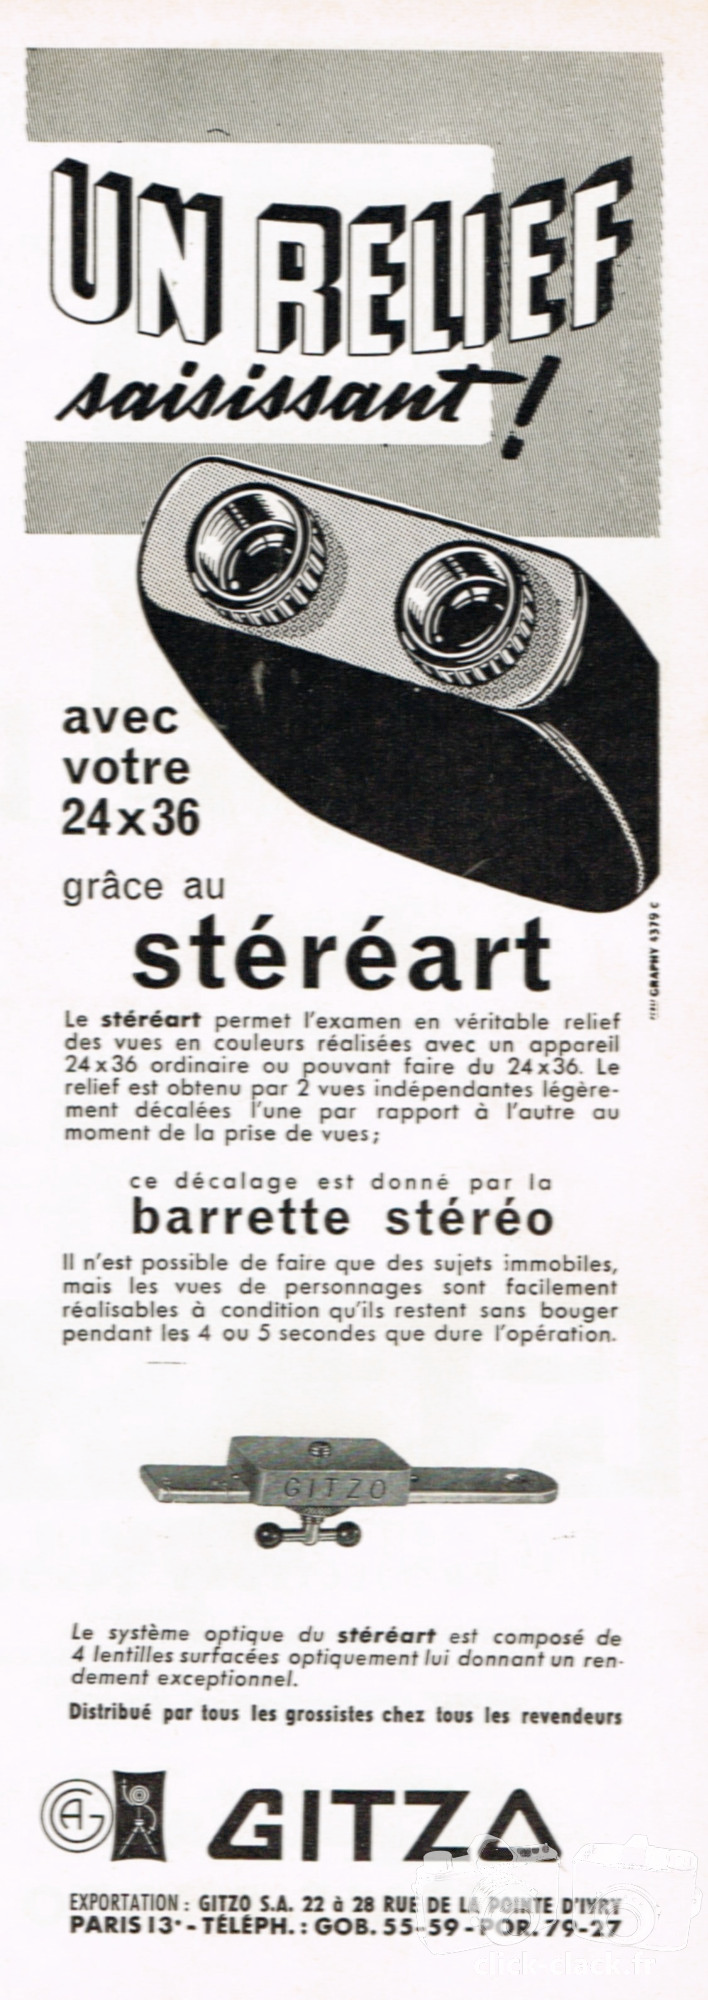 Gitzo - Stéréart, barrette stéréo - mai 1961 - Photo-Cinéma